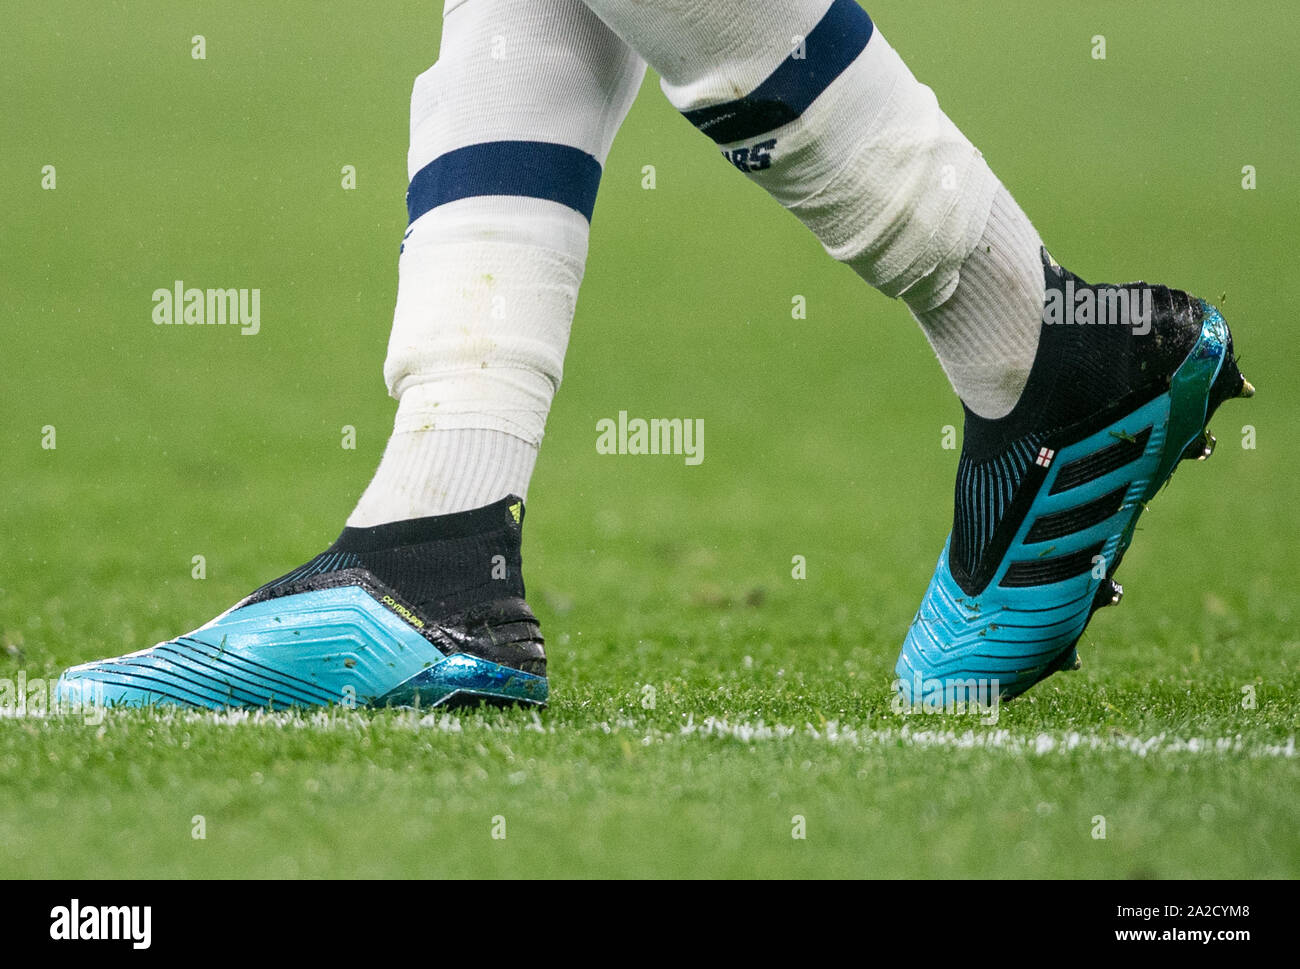 Adidas fußballschuhe -Fotos und -Bildmaterial in hoher Auflösung – Alamy